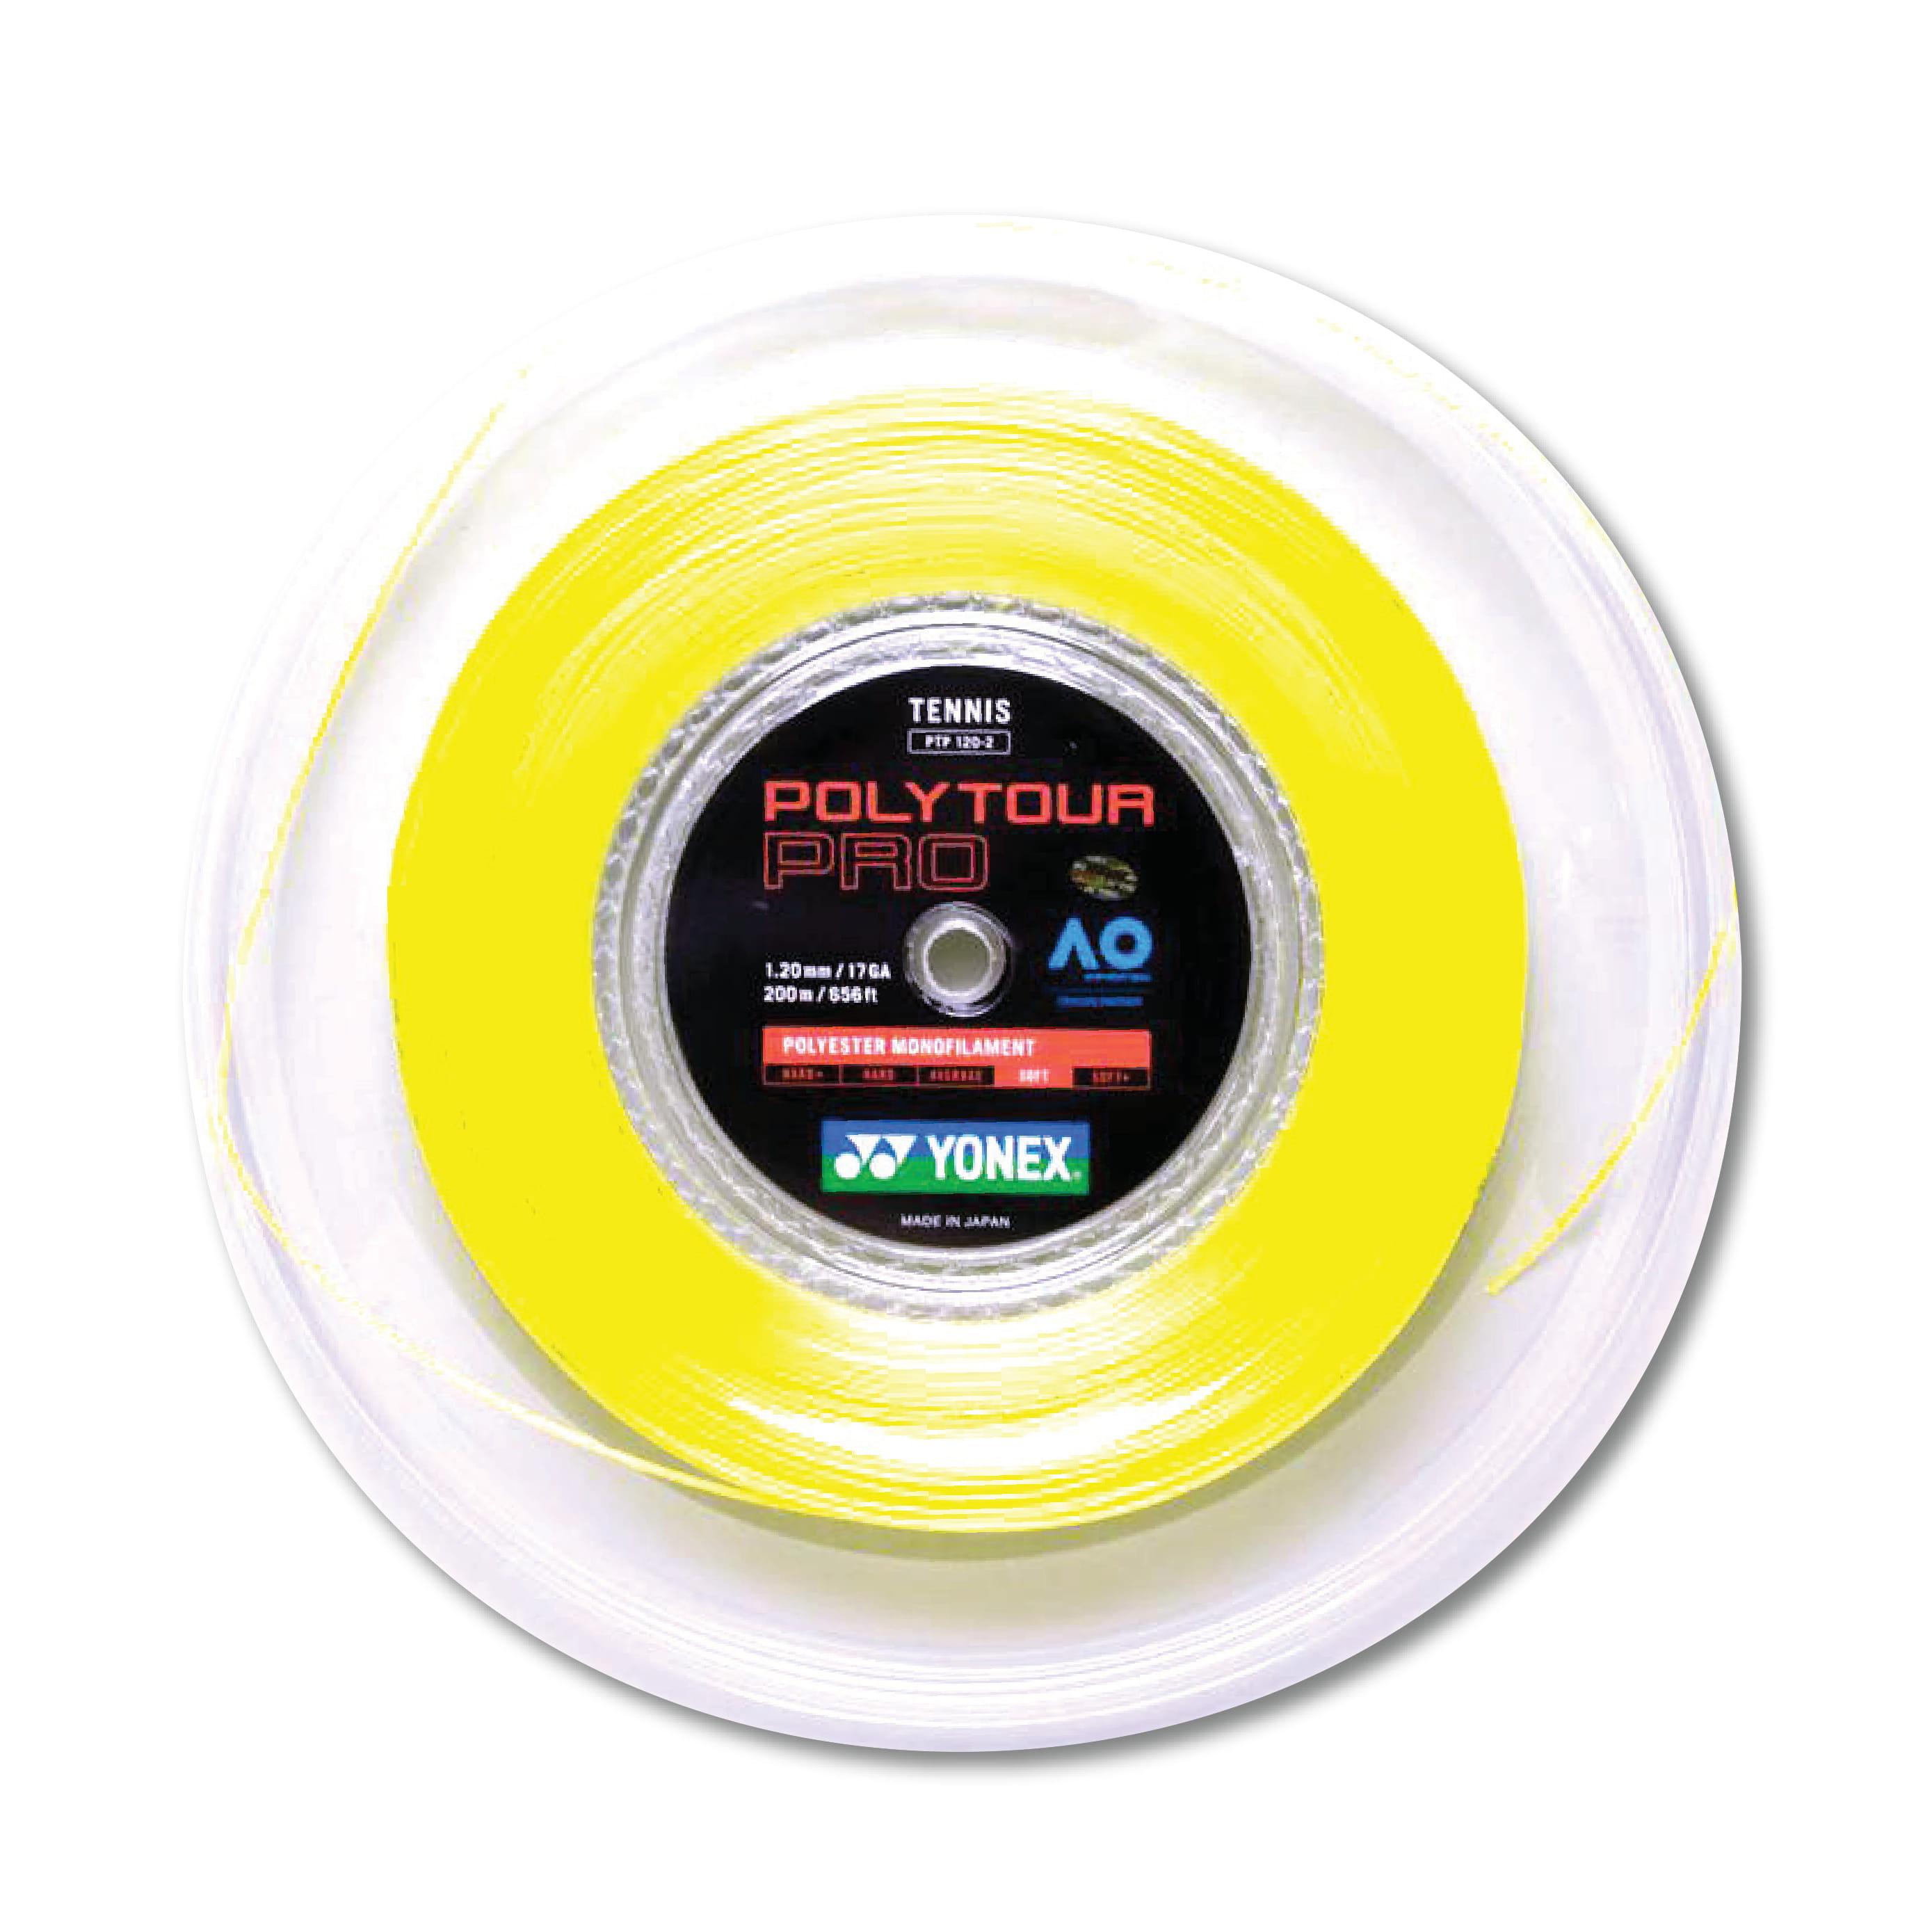 Yonex Polytour Pro 120 / 17 200m Tennis String Reel (Flash Yellow) - Flash  Yellow